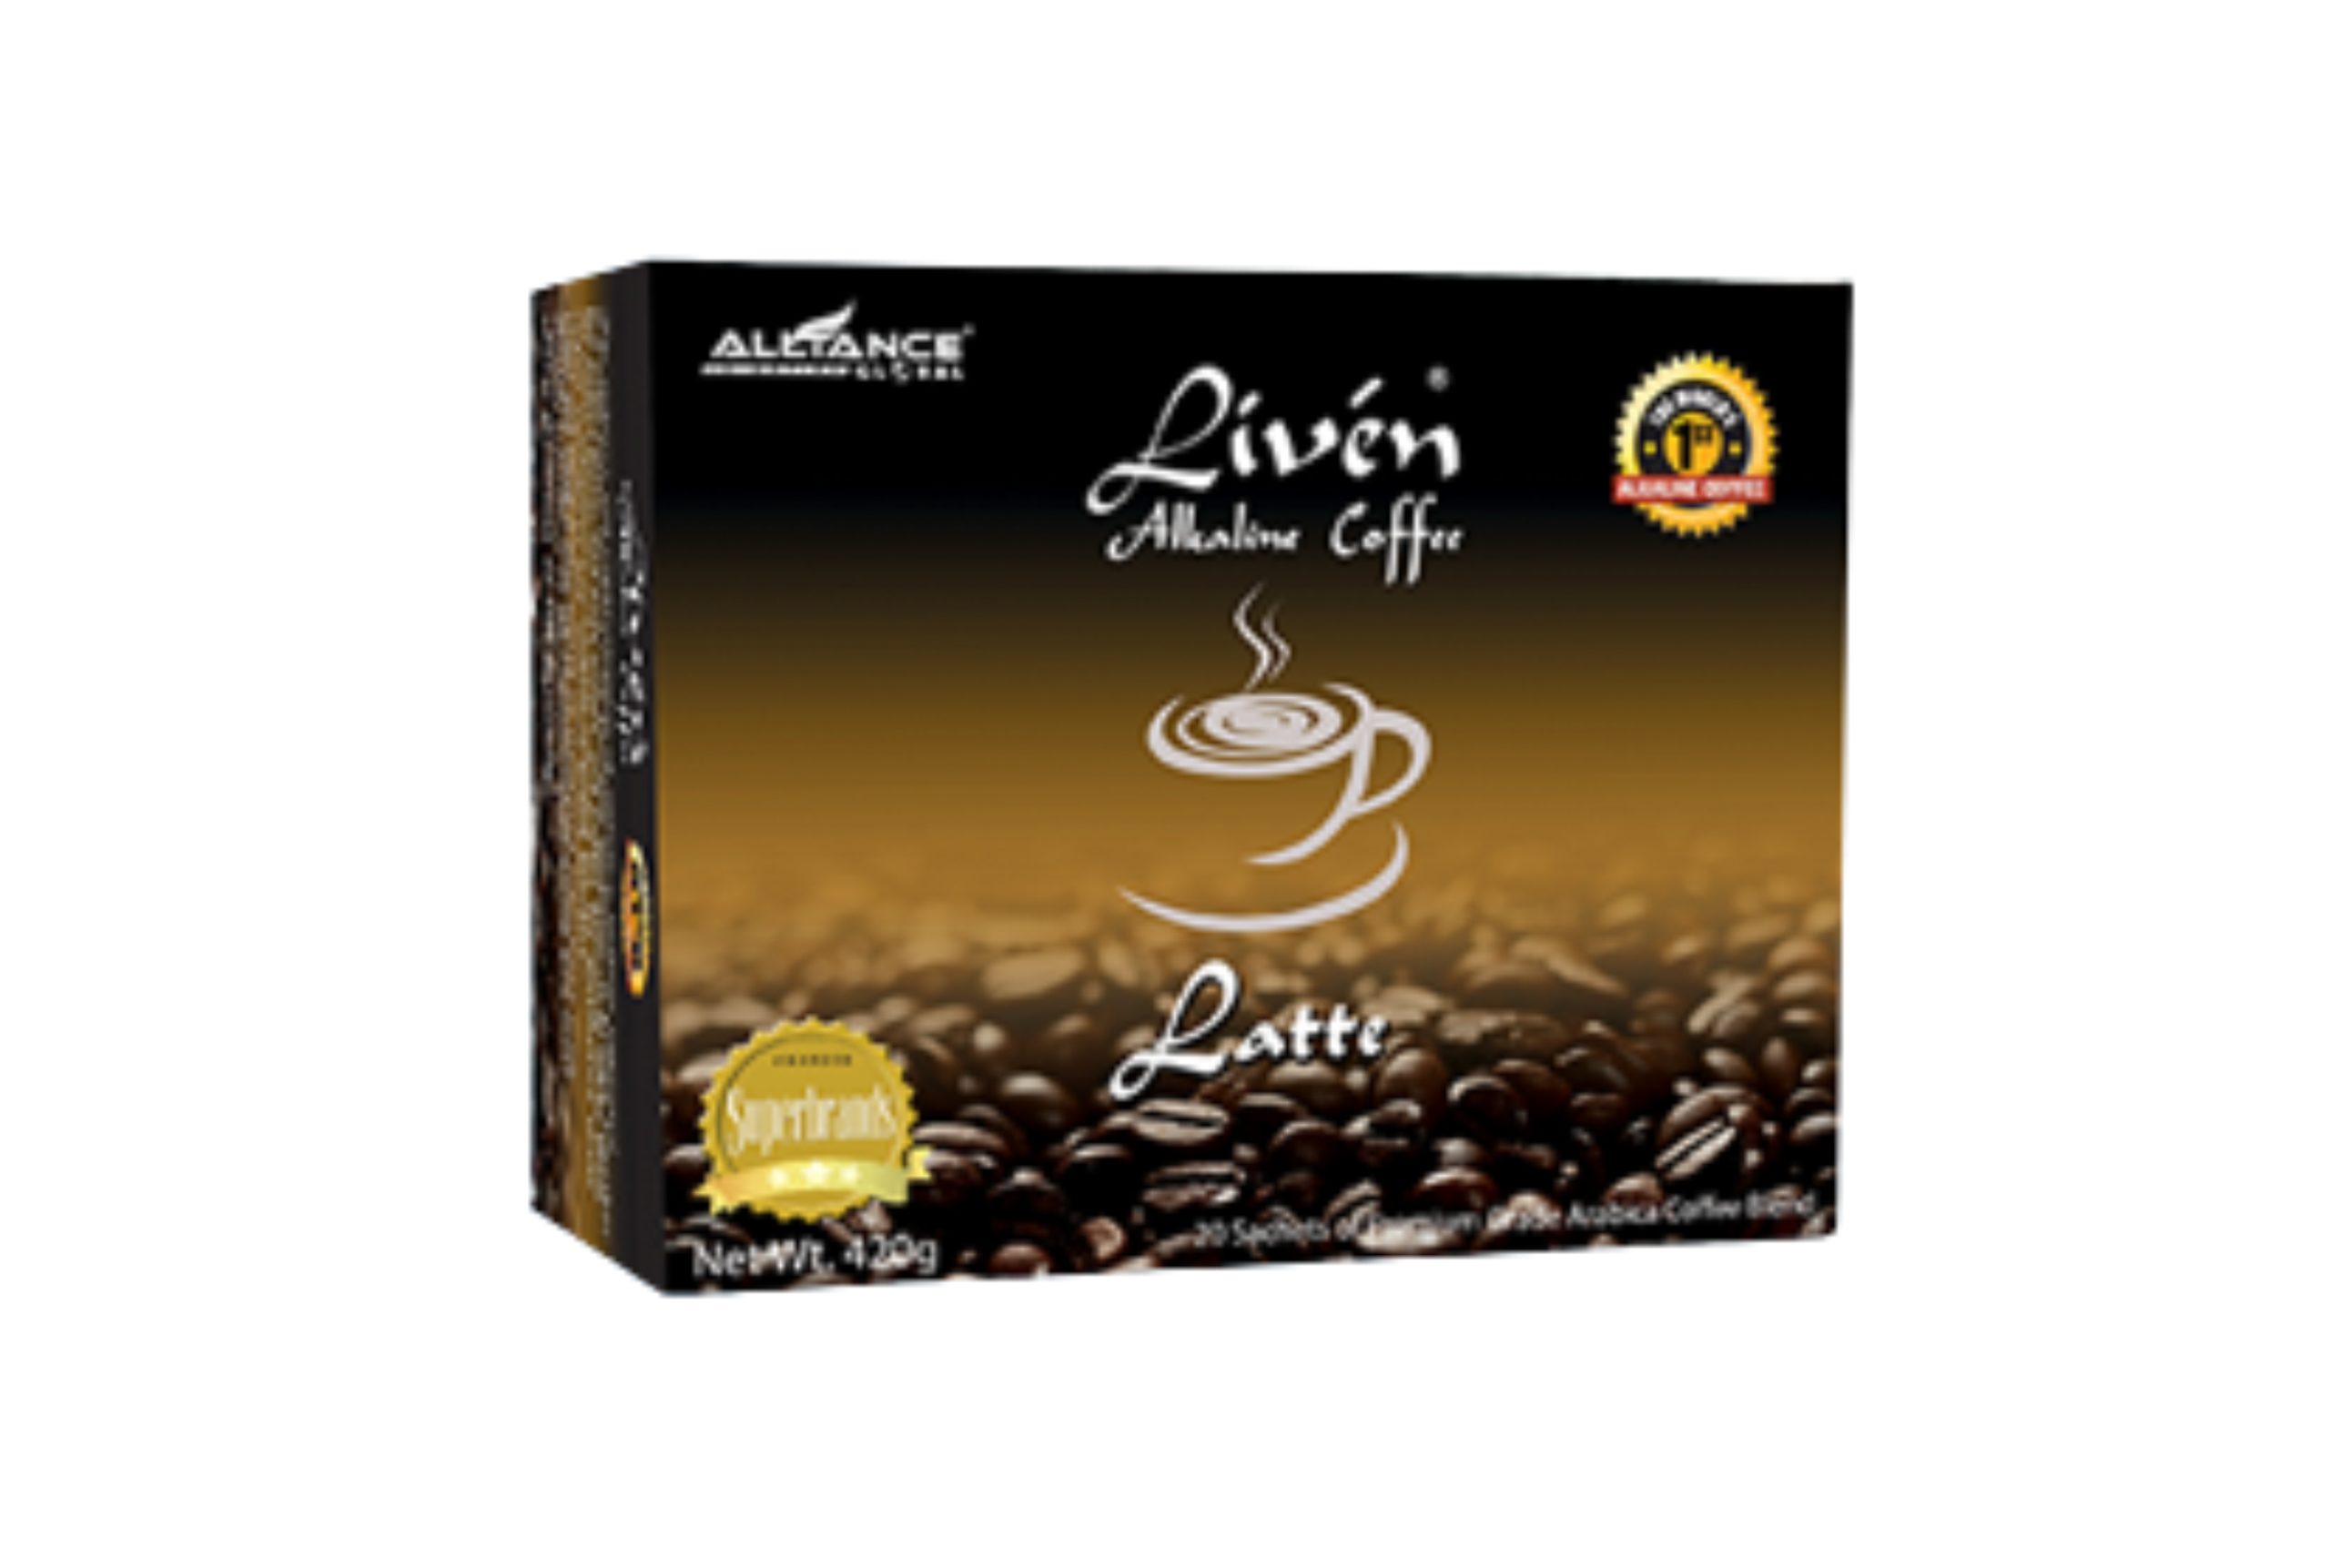 Liven Alkaline Coffee – Latte